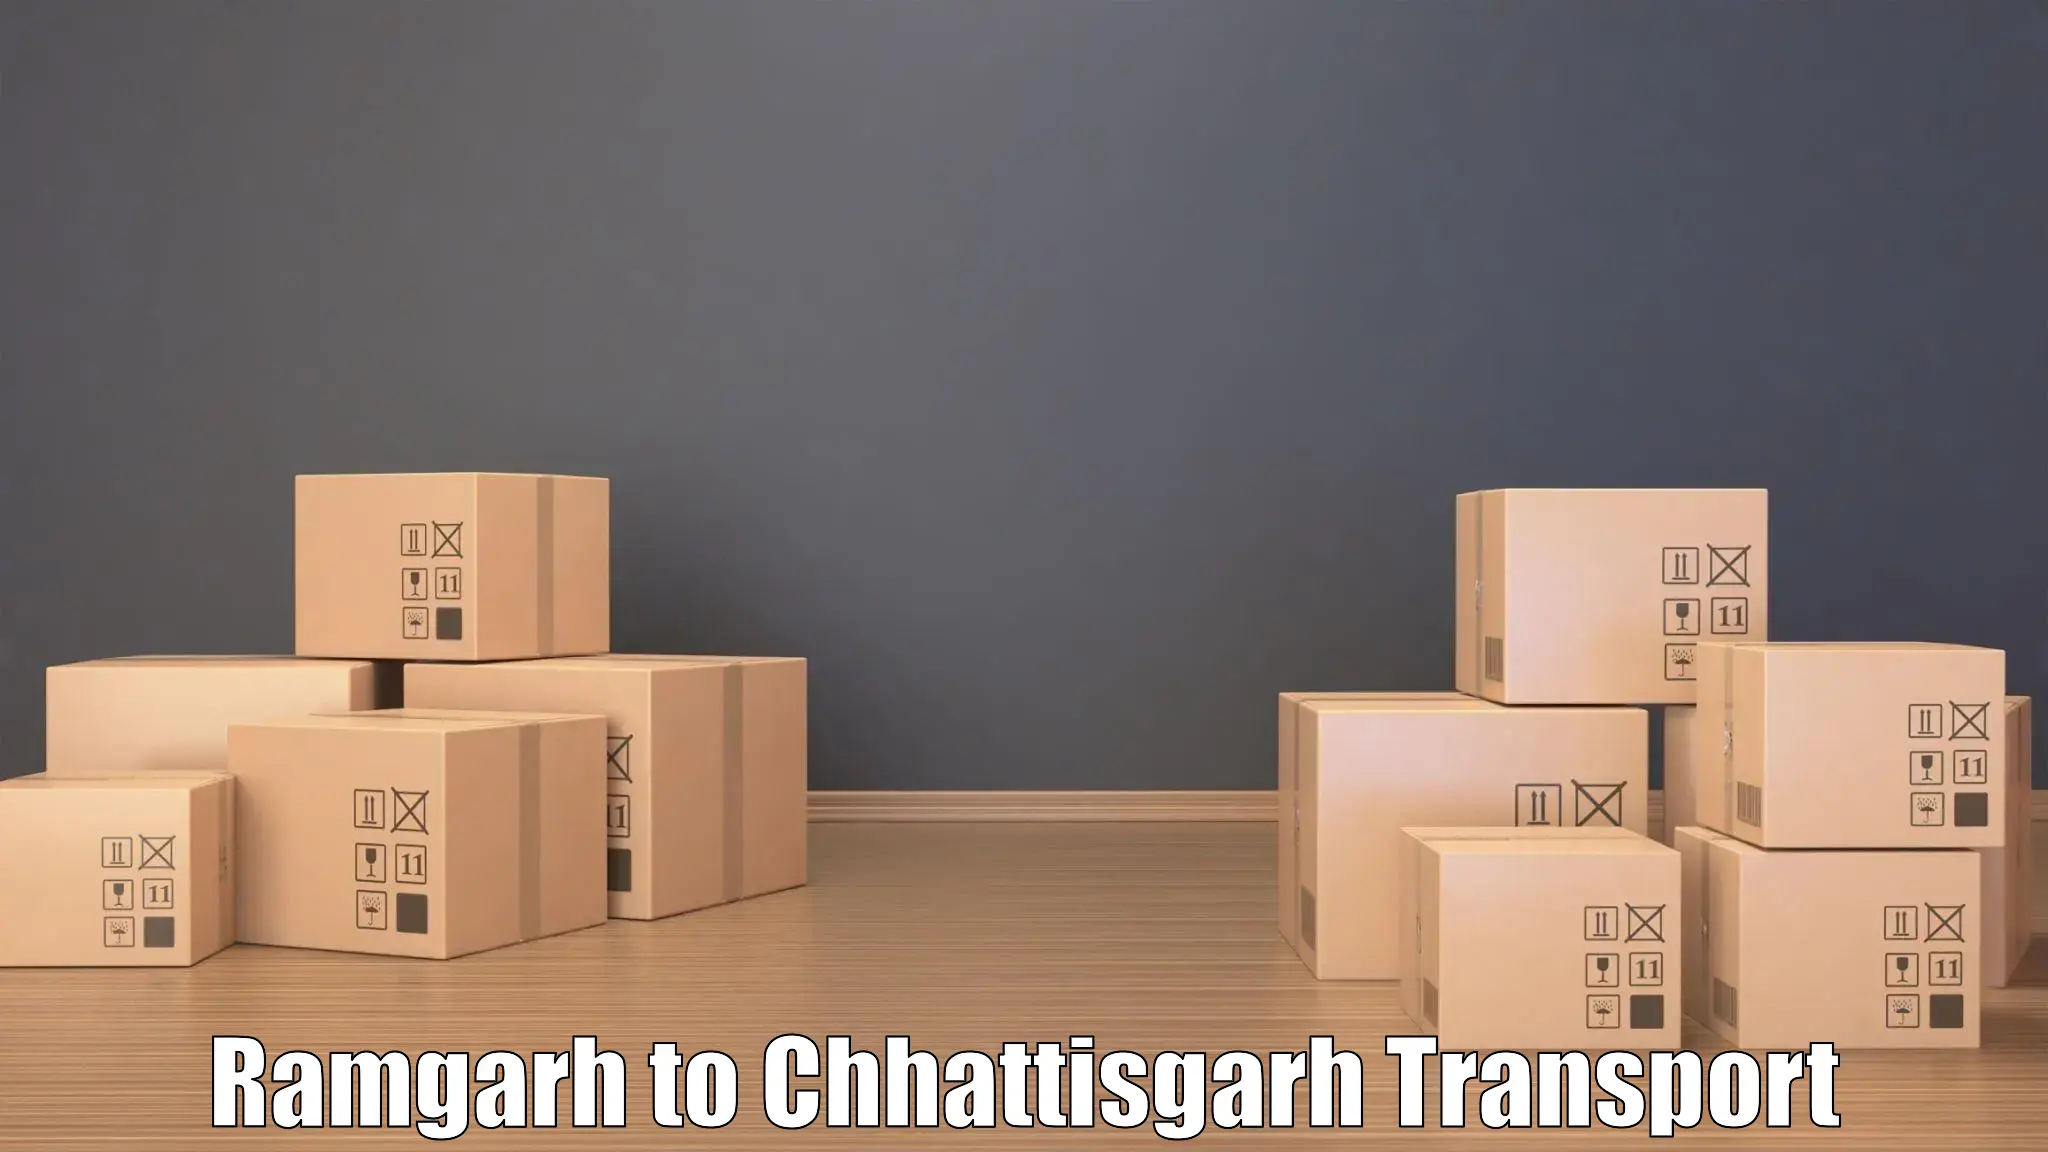 Bike shipping service Ramgarh to Patna Chhattisgarh